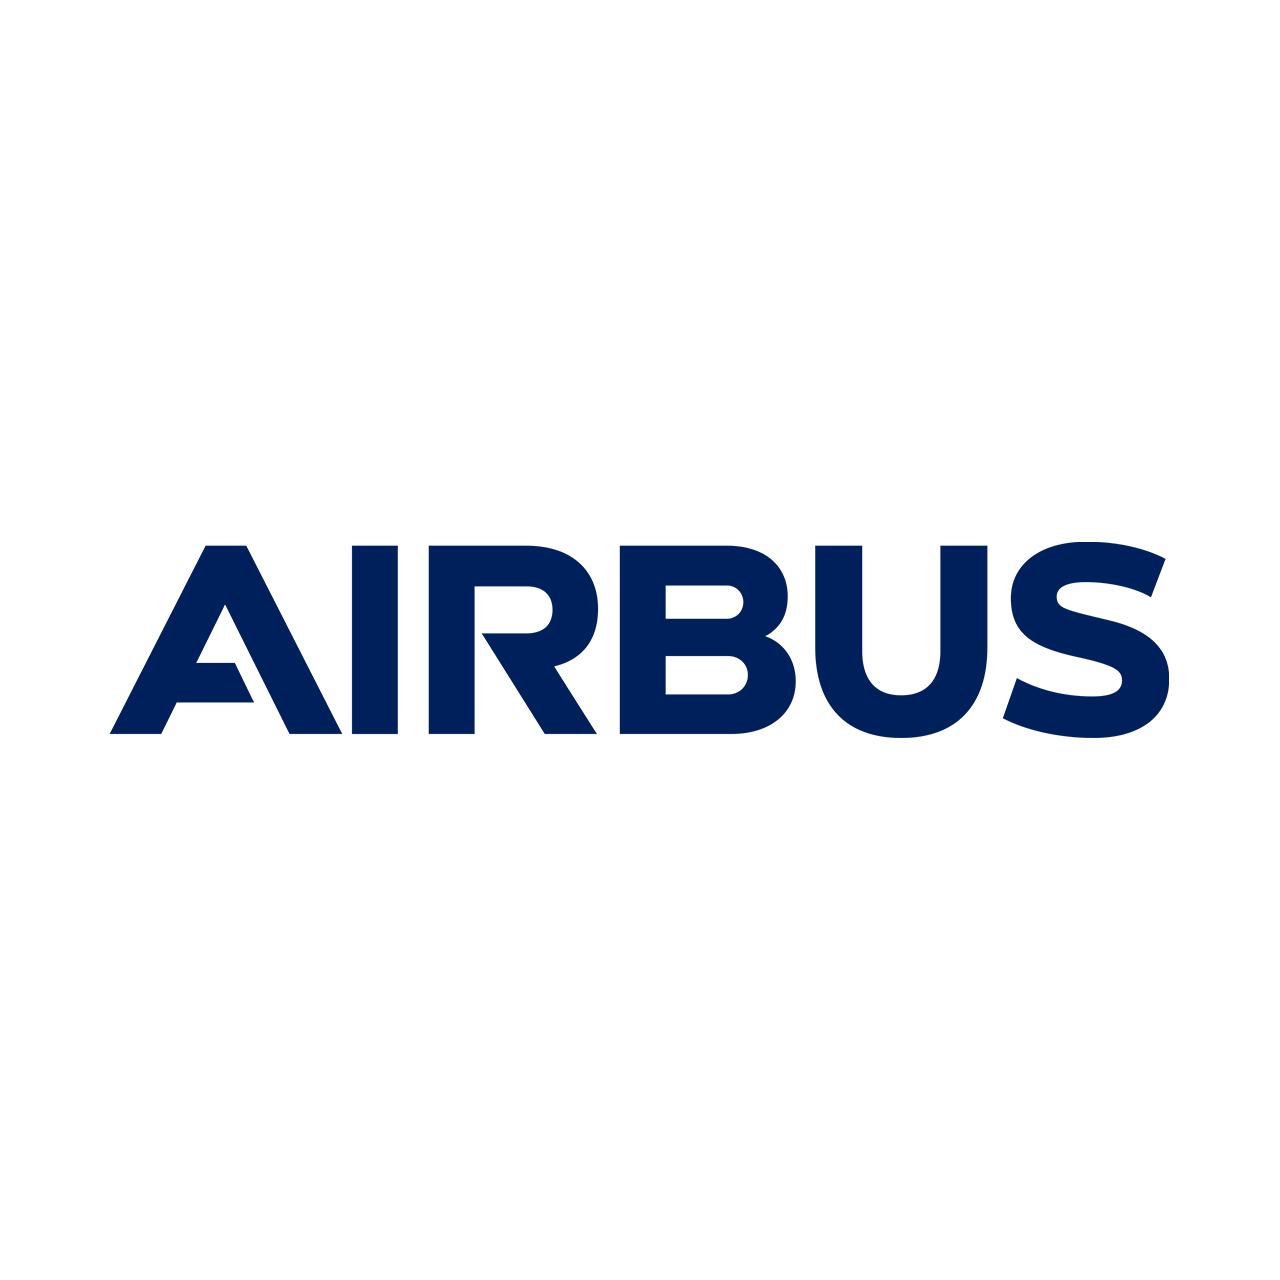 Airbus_Logo